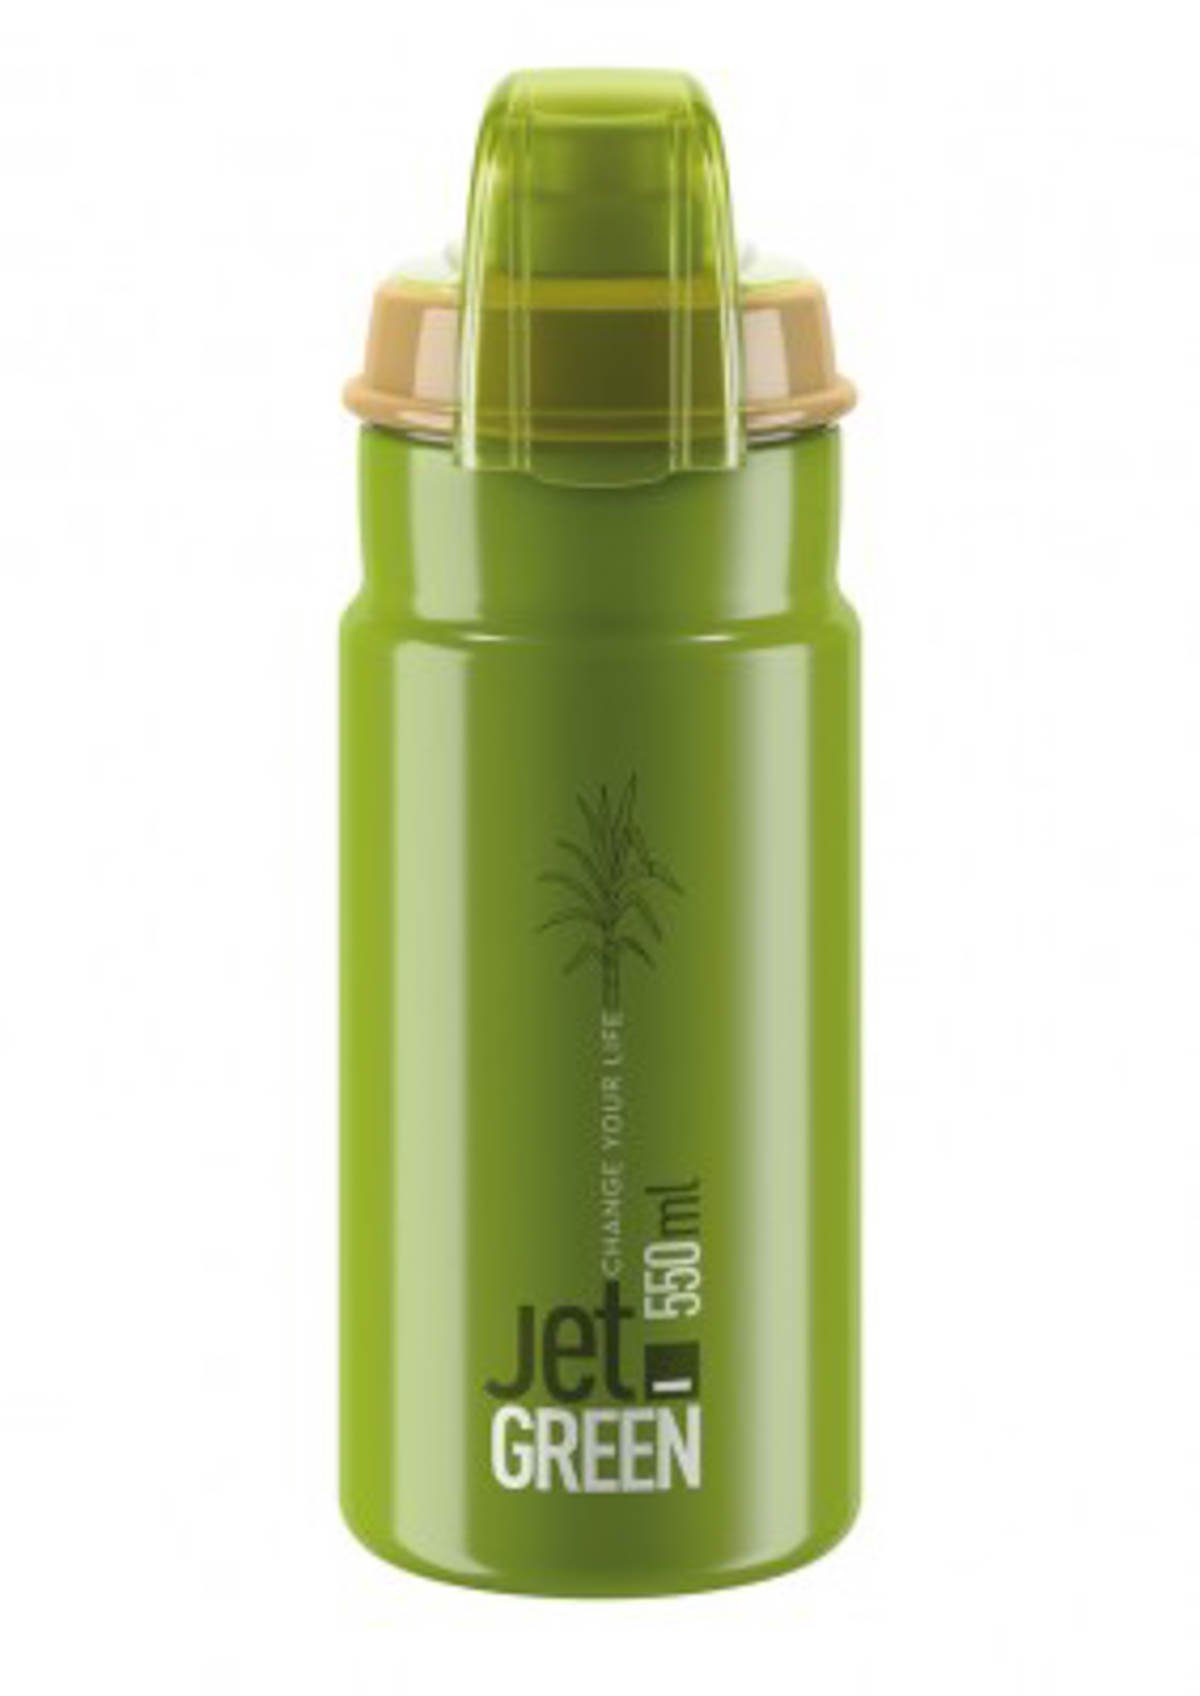 Elite Trinkflasche Trinkflasche Elite Jet Green Plus 550ml, grün/oliv | Trinkflaschen